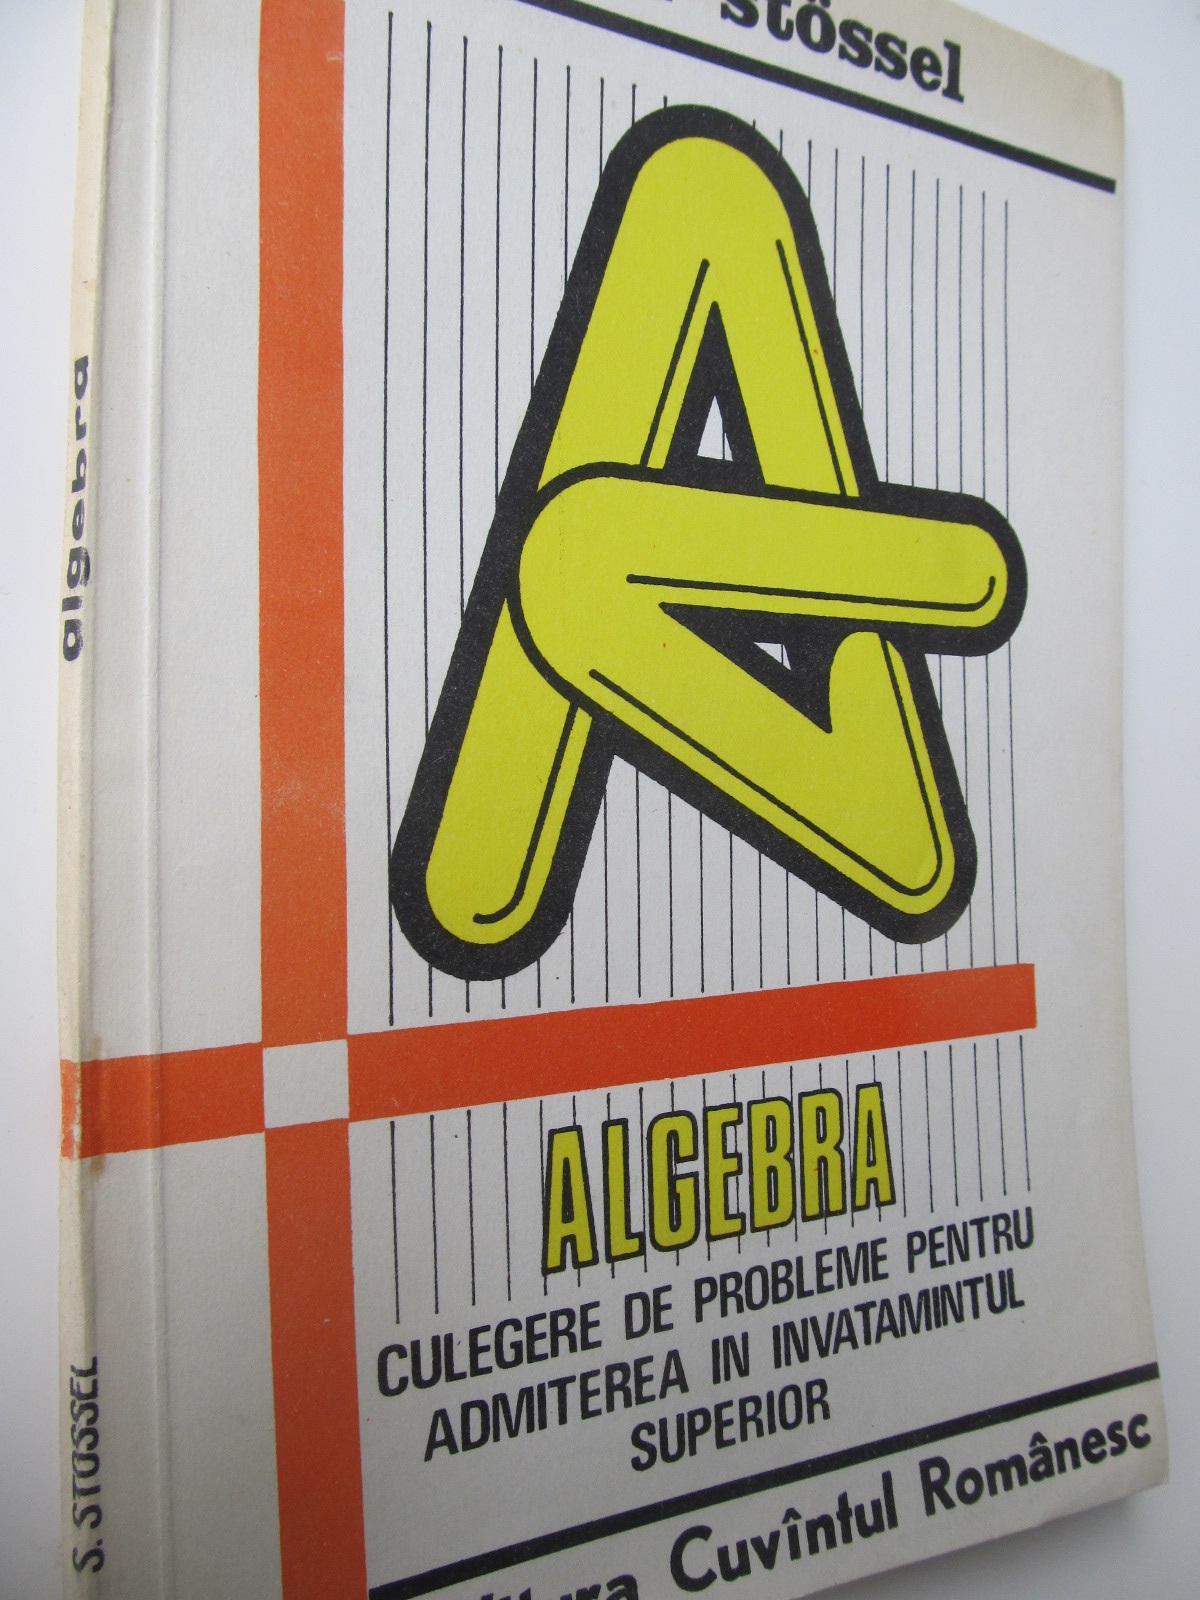 Algebra culegere de probleme pentru admiterea in invatamantul superior - Silviu Stossel | Detalii carte